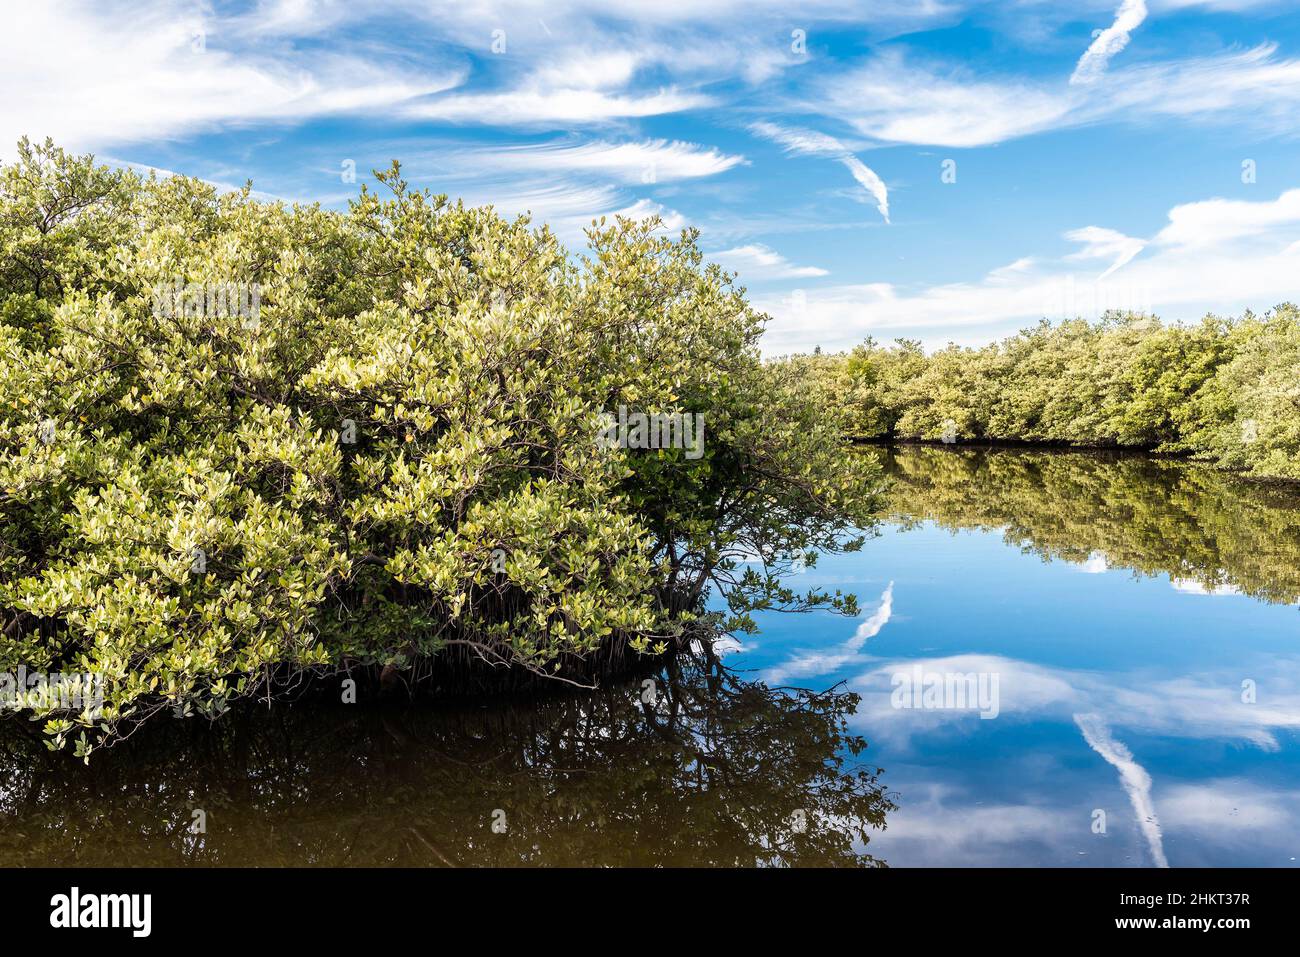 Des mangroves rouges et noires bordent un canal de miroir calme comme l'eau reflétant les nuages blancs et le ciel bleu vif au-dessus. Banque D'Images